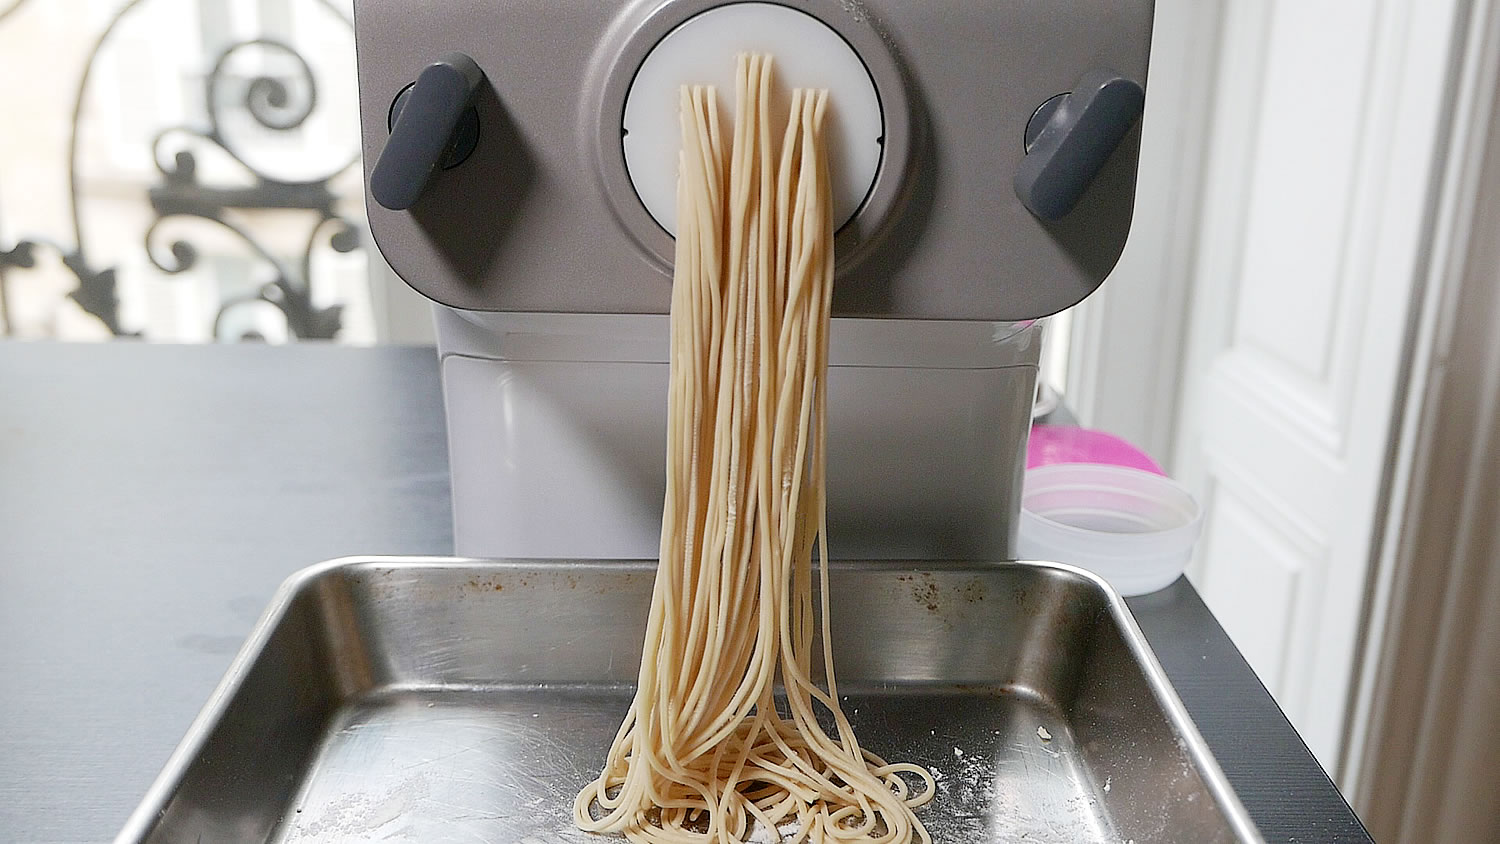 https://www.atelierlalune.com/wp-content/uploads/2020/03/noodle-maker-ramen2.jpg